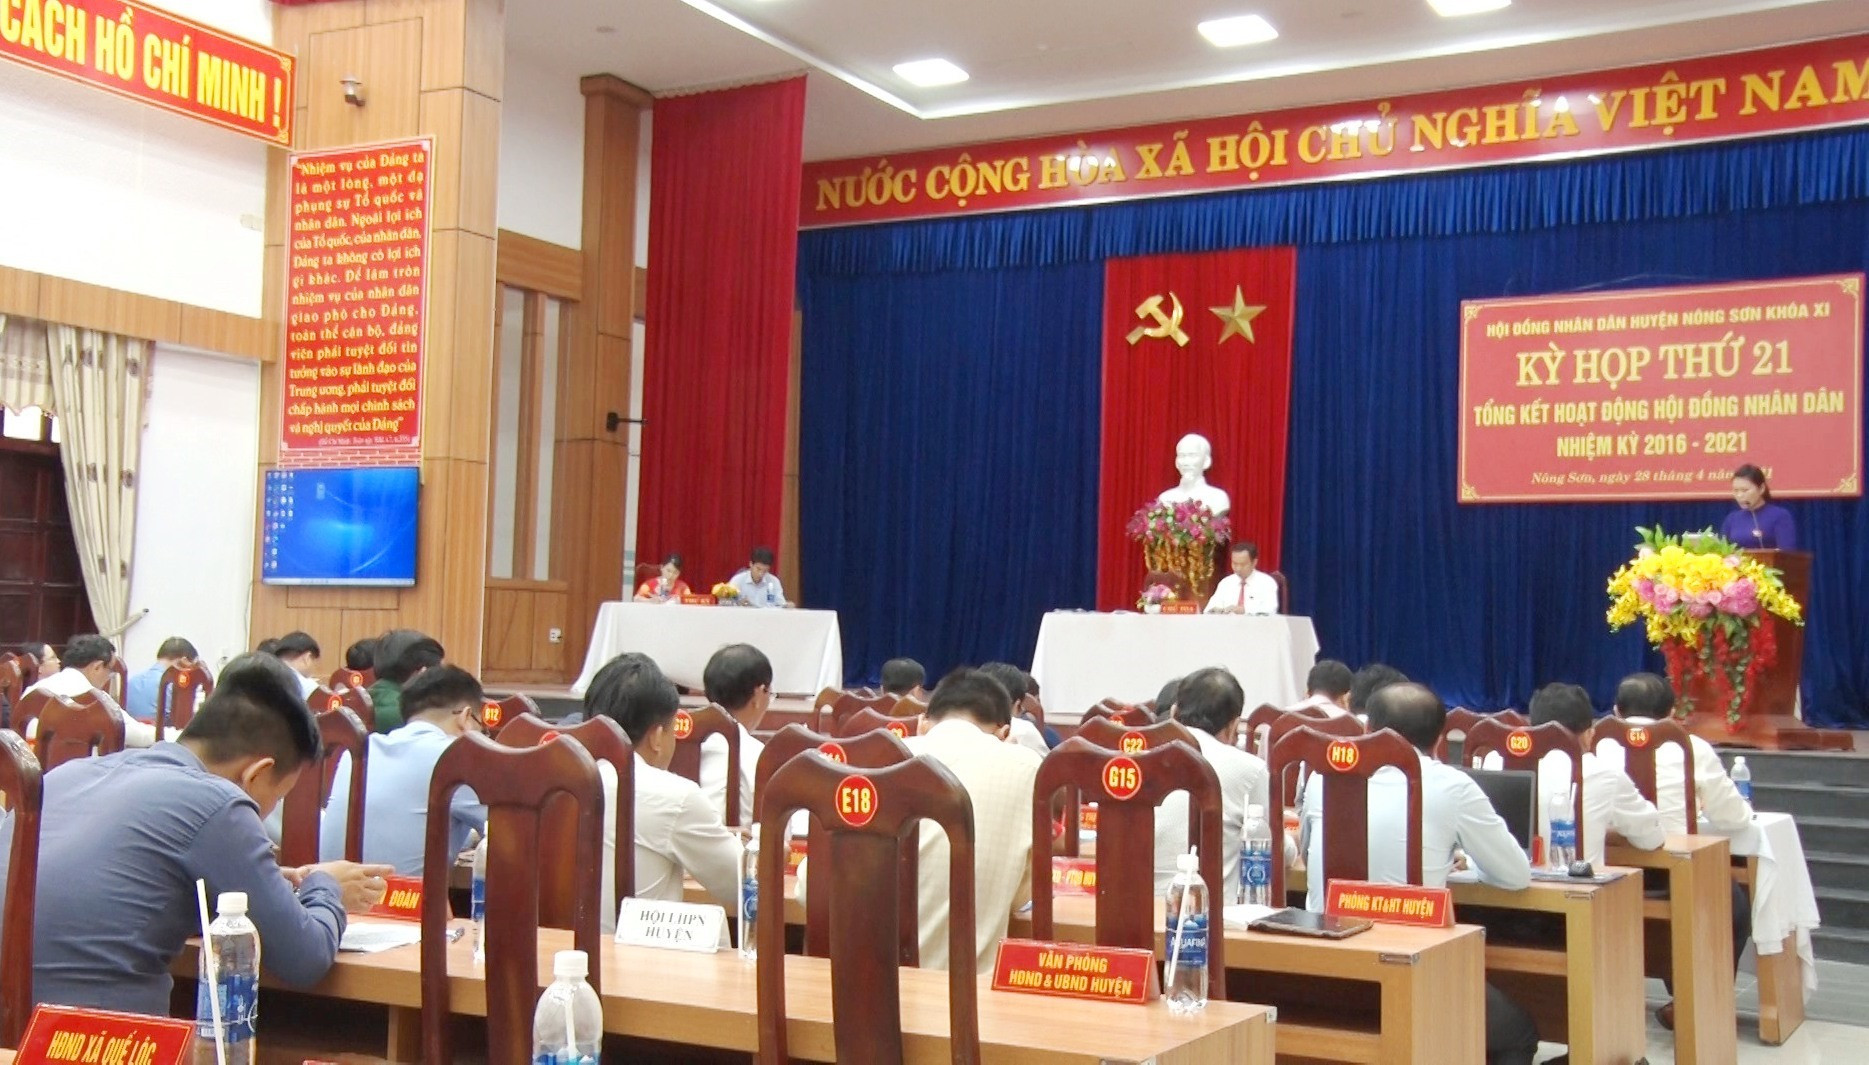 Quang cảnh kỳ họp thứ 21 HĐND huyện Nông Sơn khóa XI (nhiệm kỳ 2016-2021). Ảnh: LÊ THÔNG